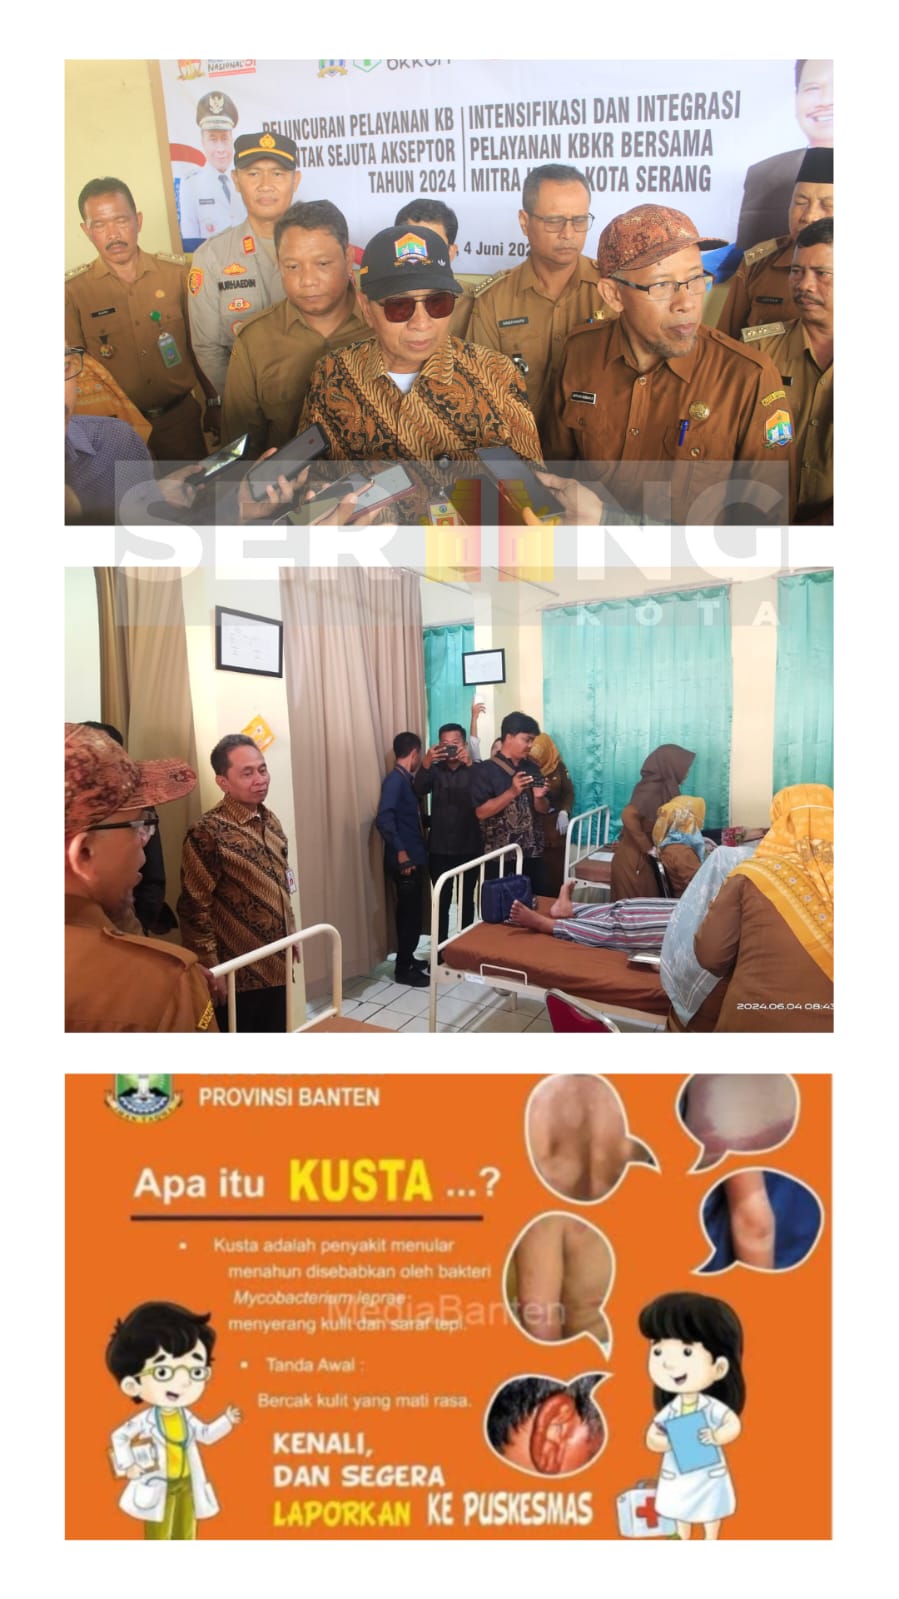 Penyakit Kusta bayangi HARGANAS di Kota Serang, Pj Walikota peroleh laporan 1 keluarga terkena Kusta